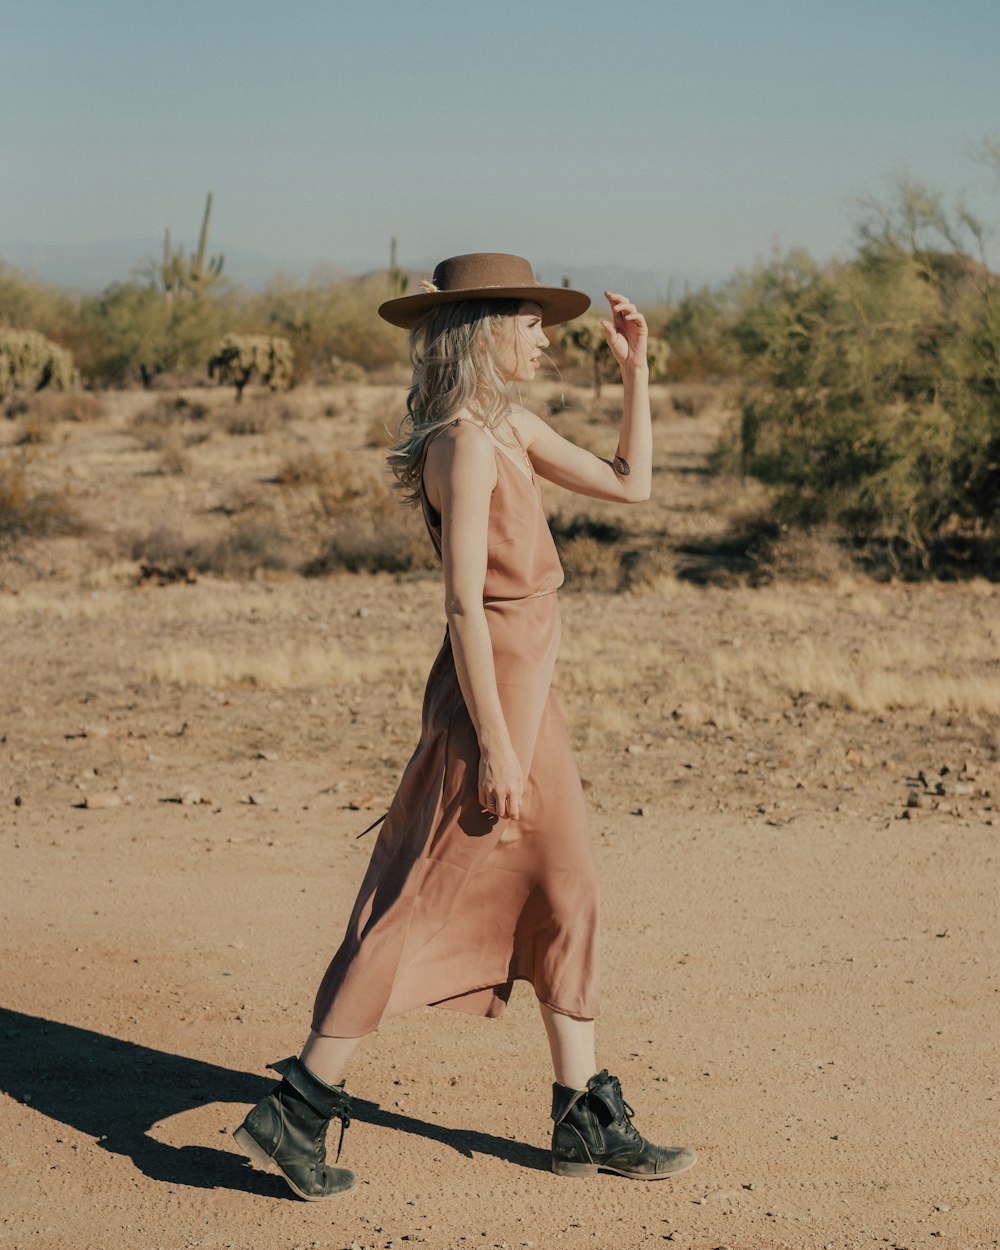 a woman walking across a dirt field wearing a hat